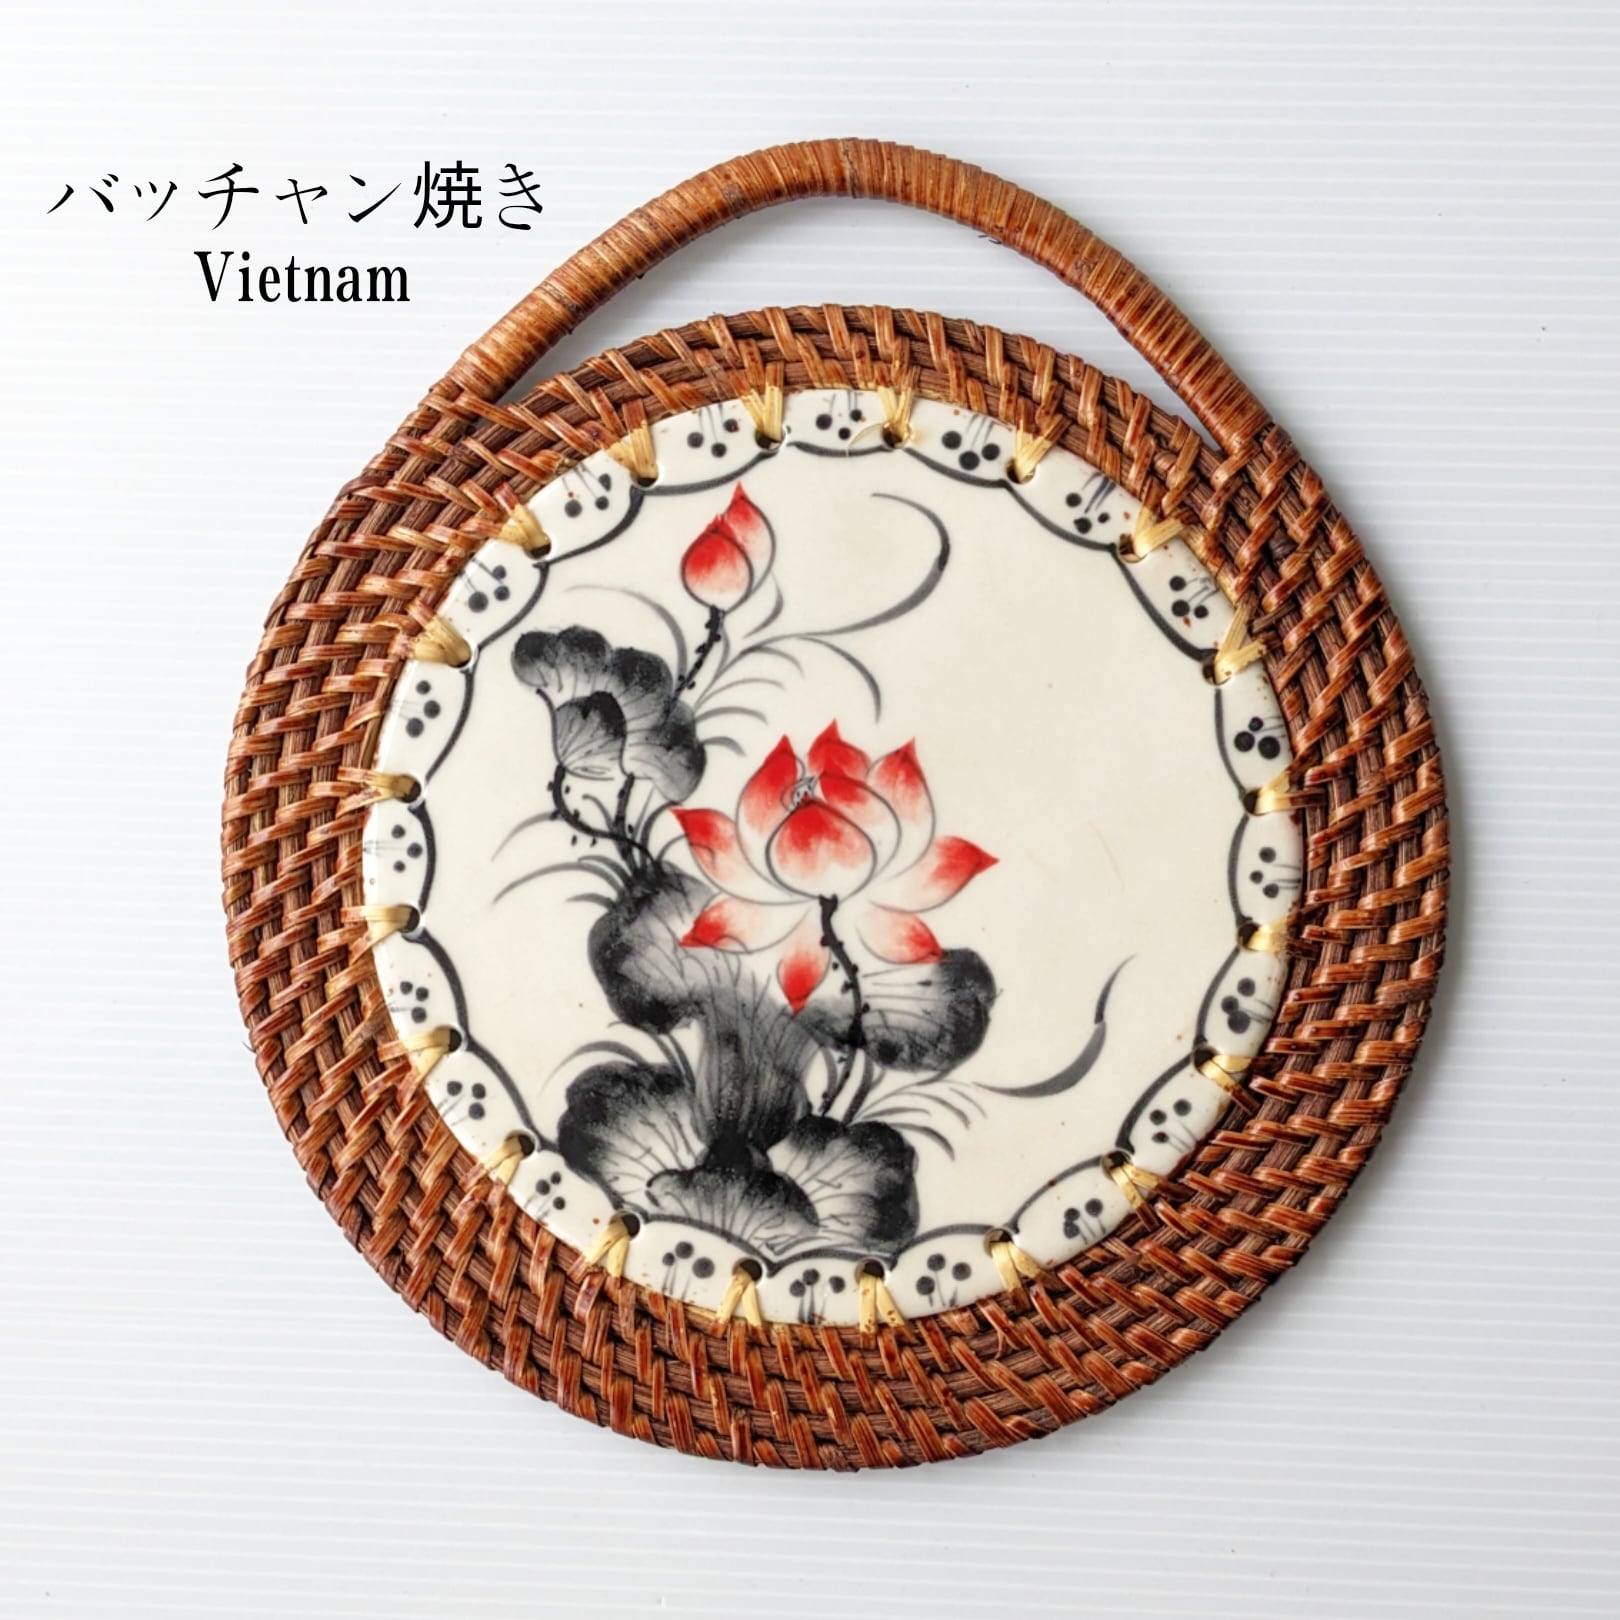 絶品 新品ベトナムのバッチャン焼き ラタン編みの鍋焼き壁飾り